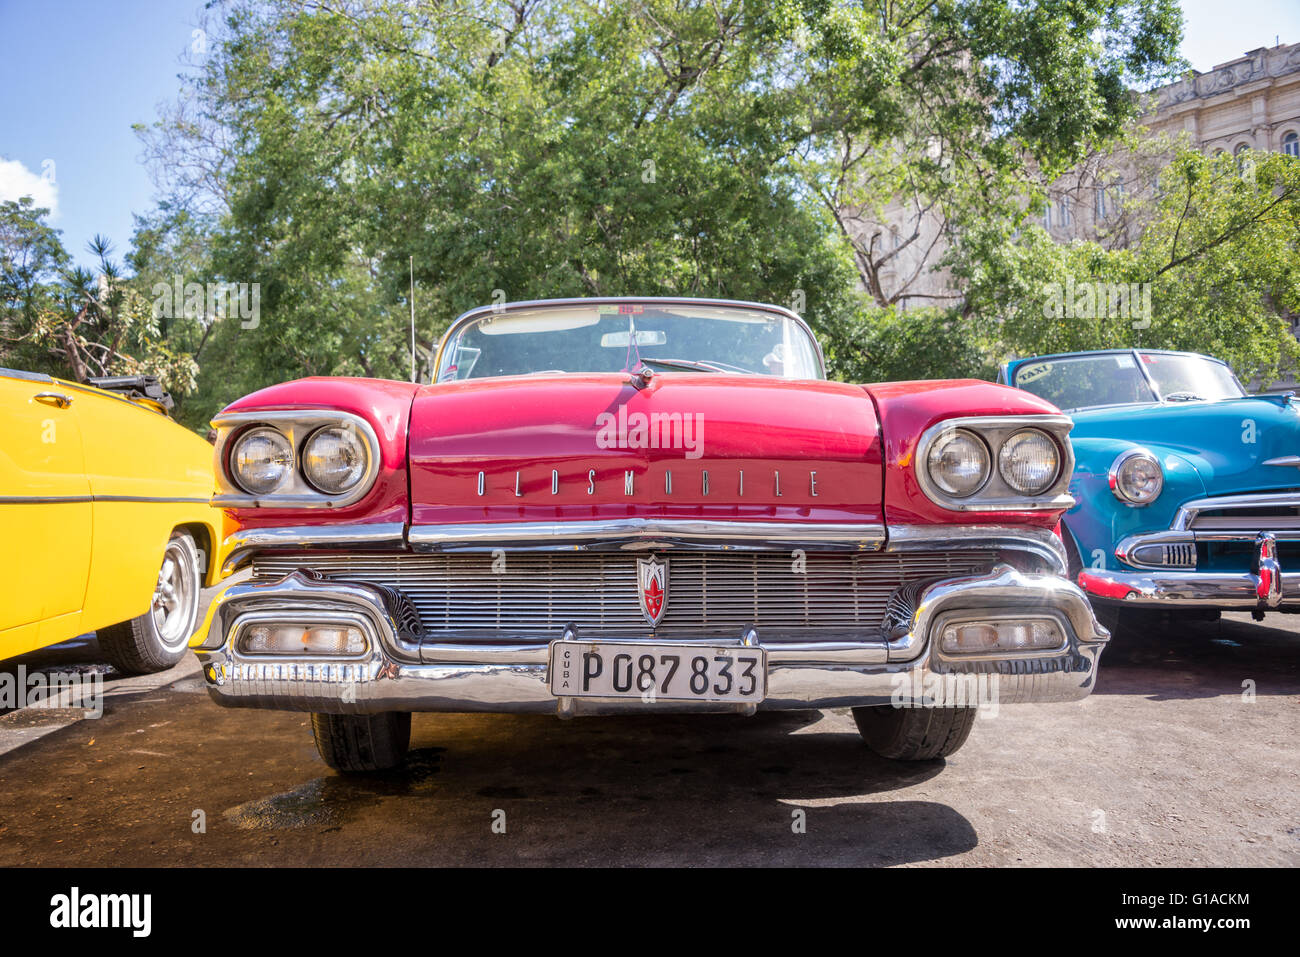 La HAVANE, CUBA - 18 avril : de l'avant d'une voiture américaine classique rouge 1950, le 18 avril 2016 à La Havane Banque D'Images